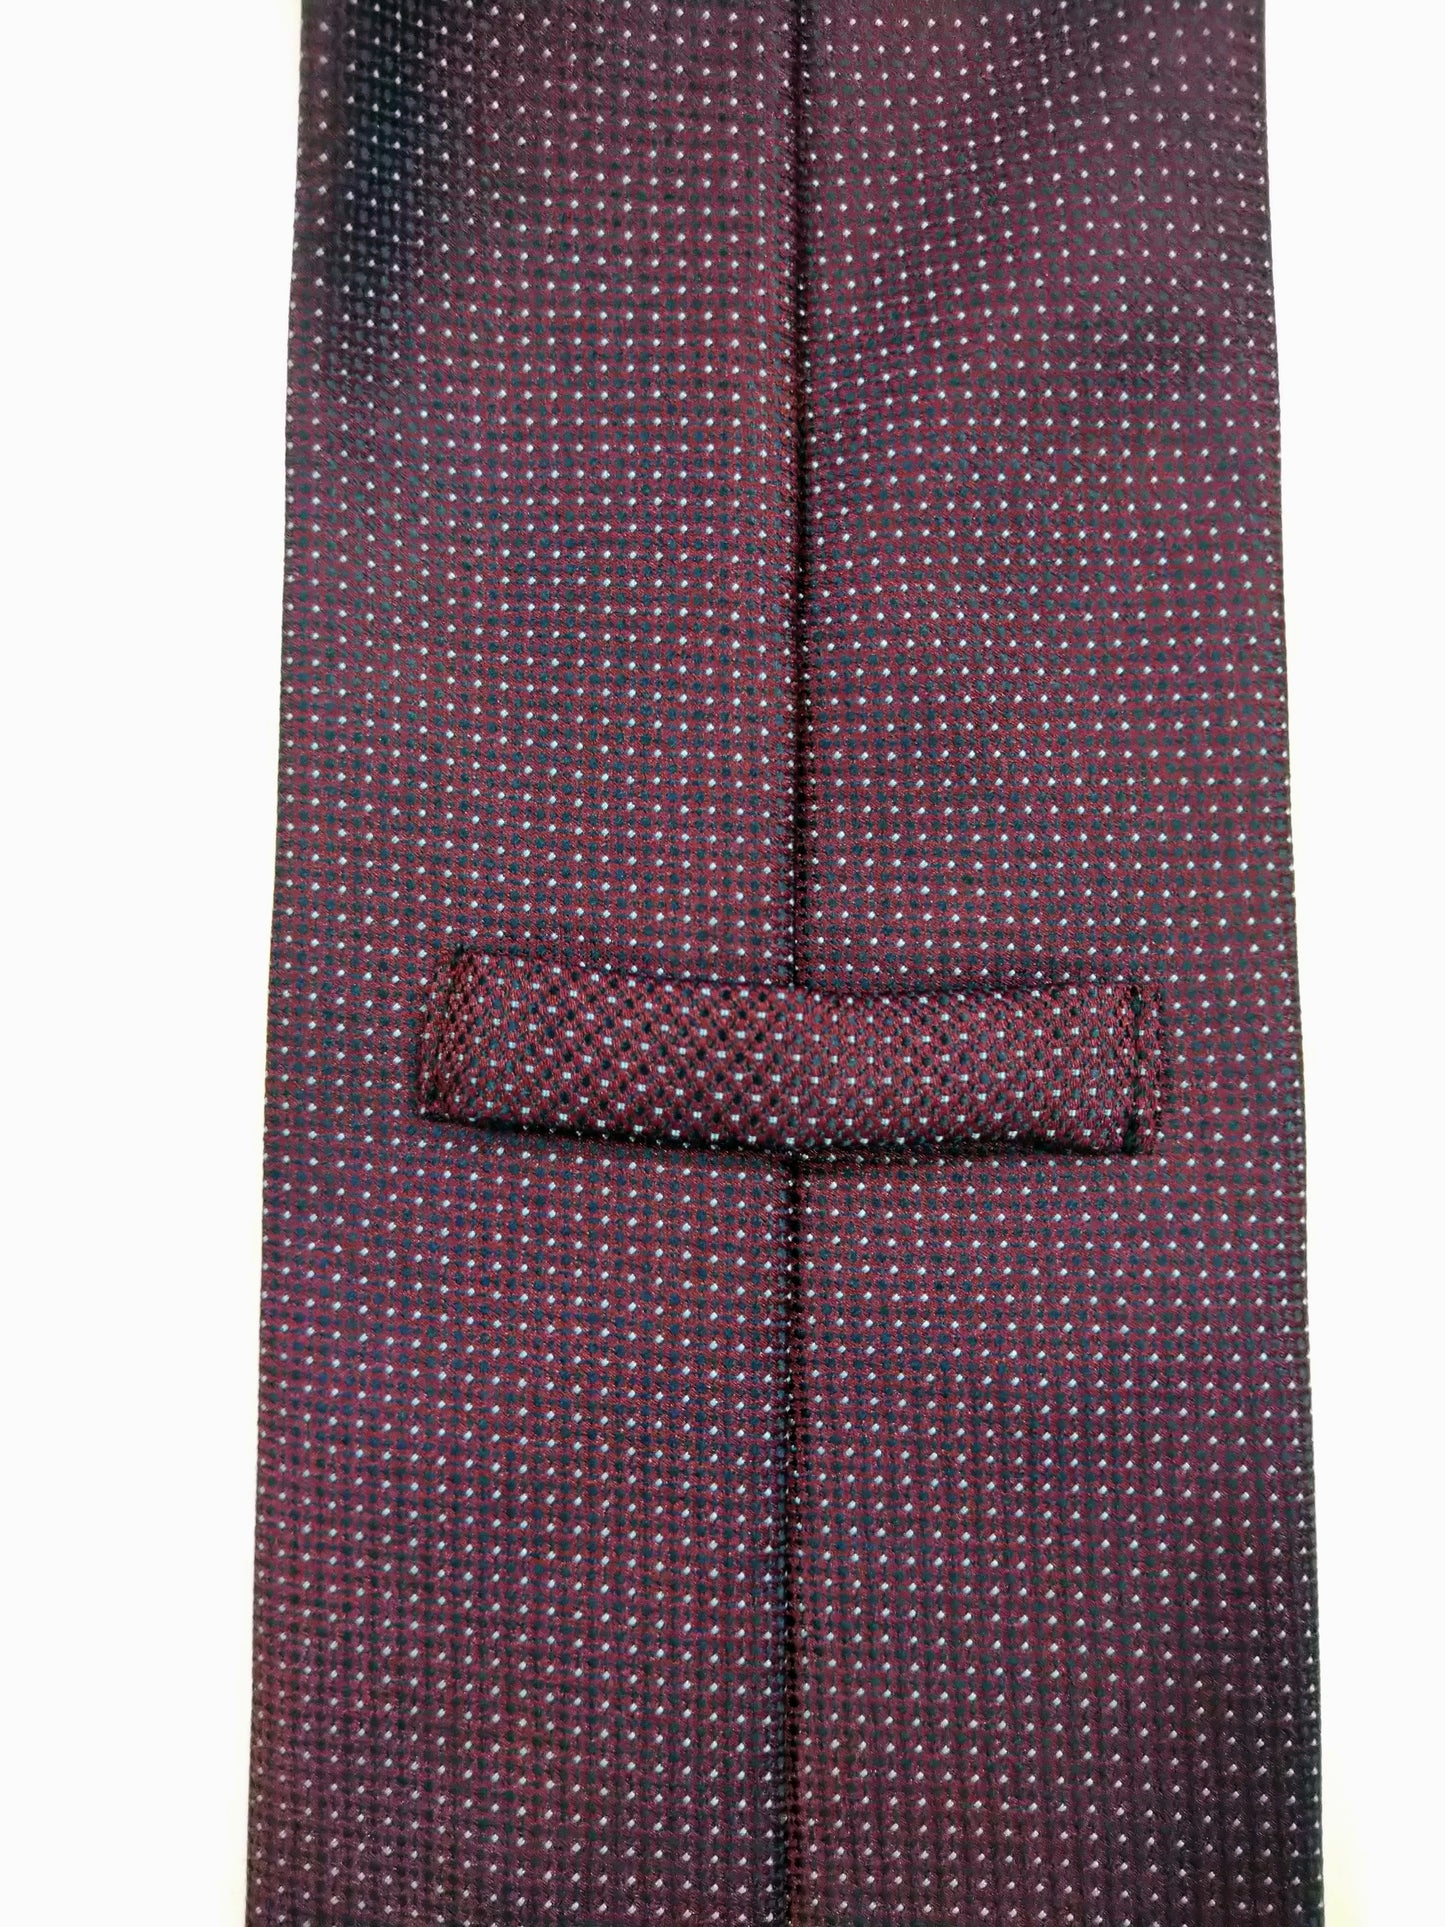 Marks & Spencer Polyester Tie. Motif violet.